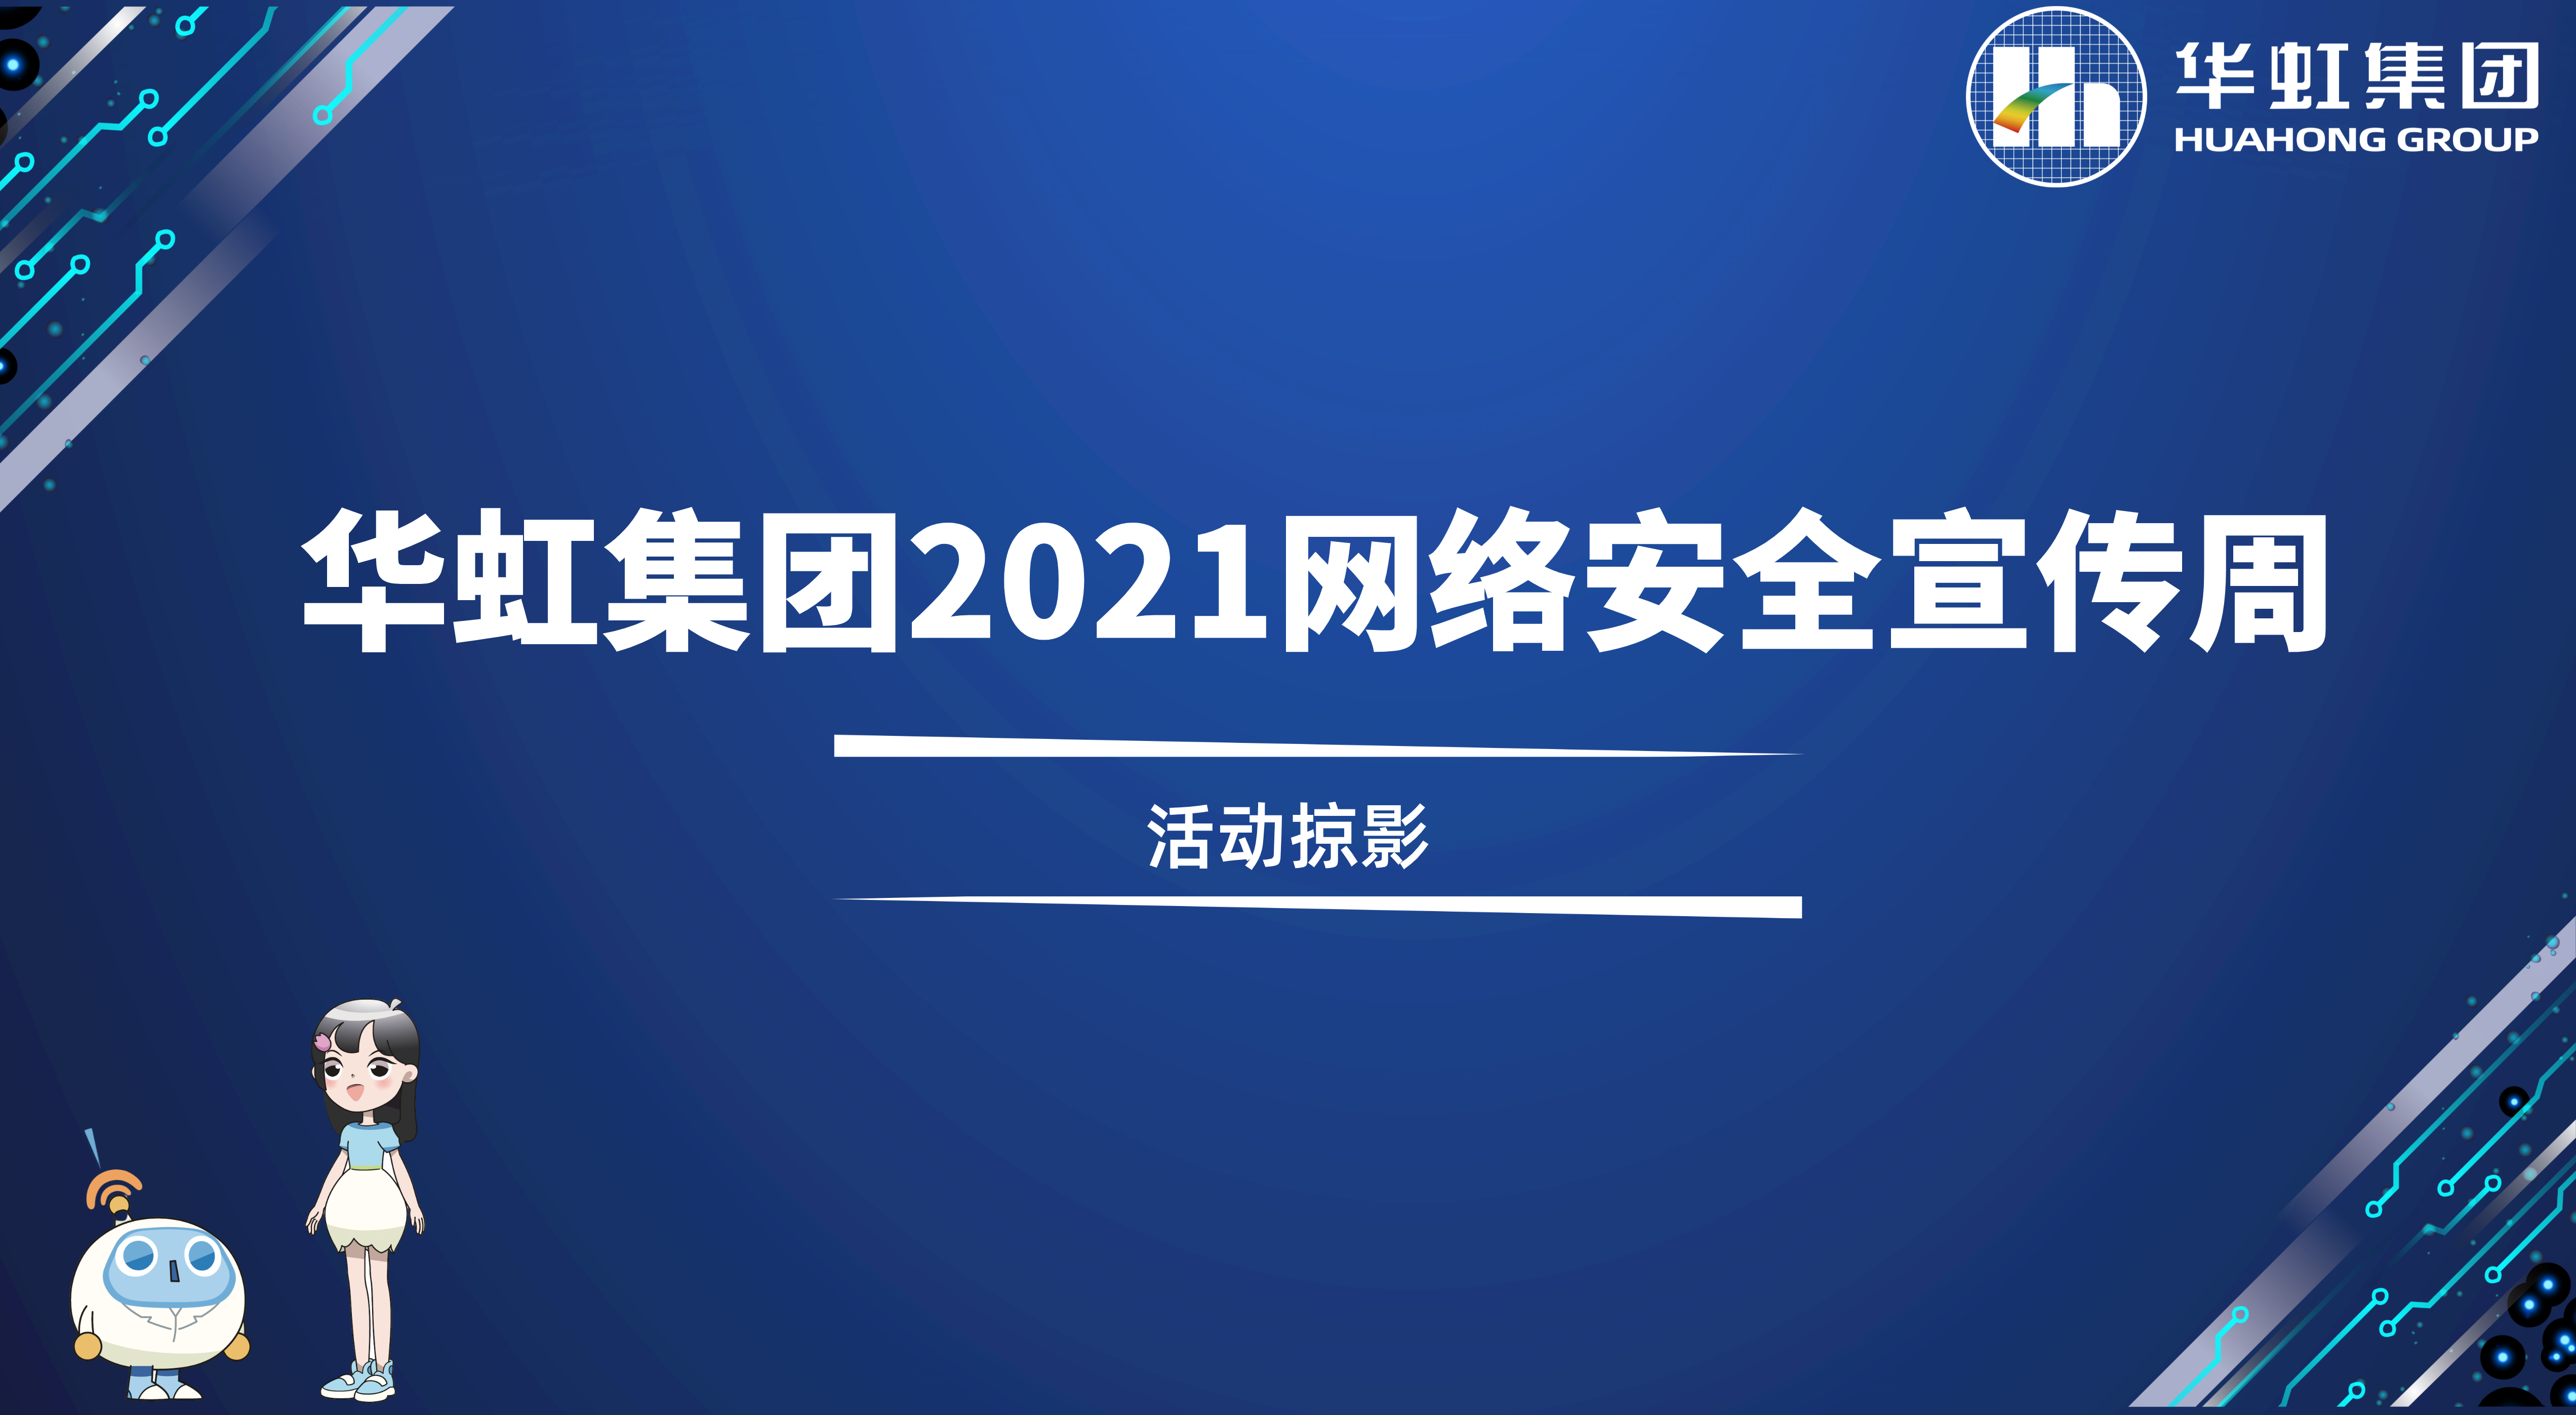 回顾精彩丨沙巴在线(中国)有限公司官网2021网络安全宣传周活动掠影